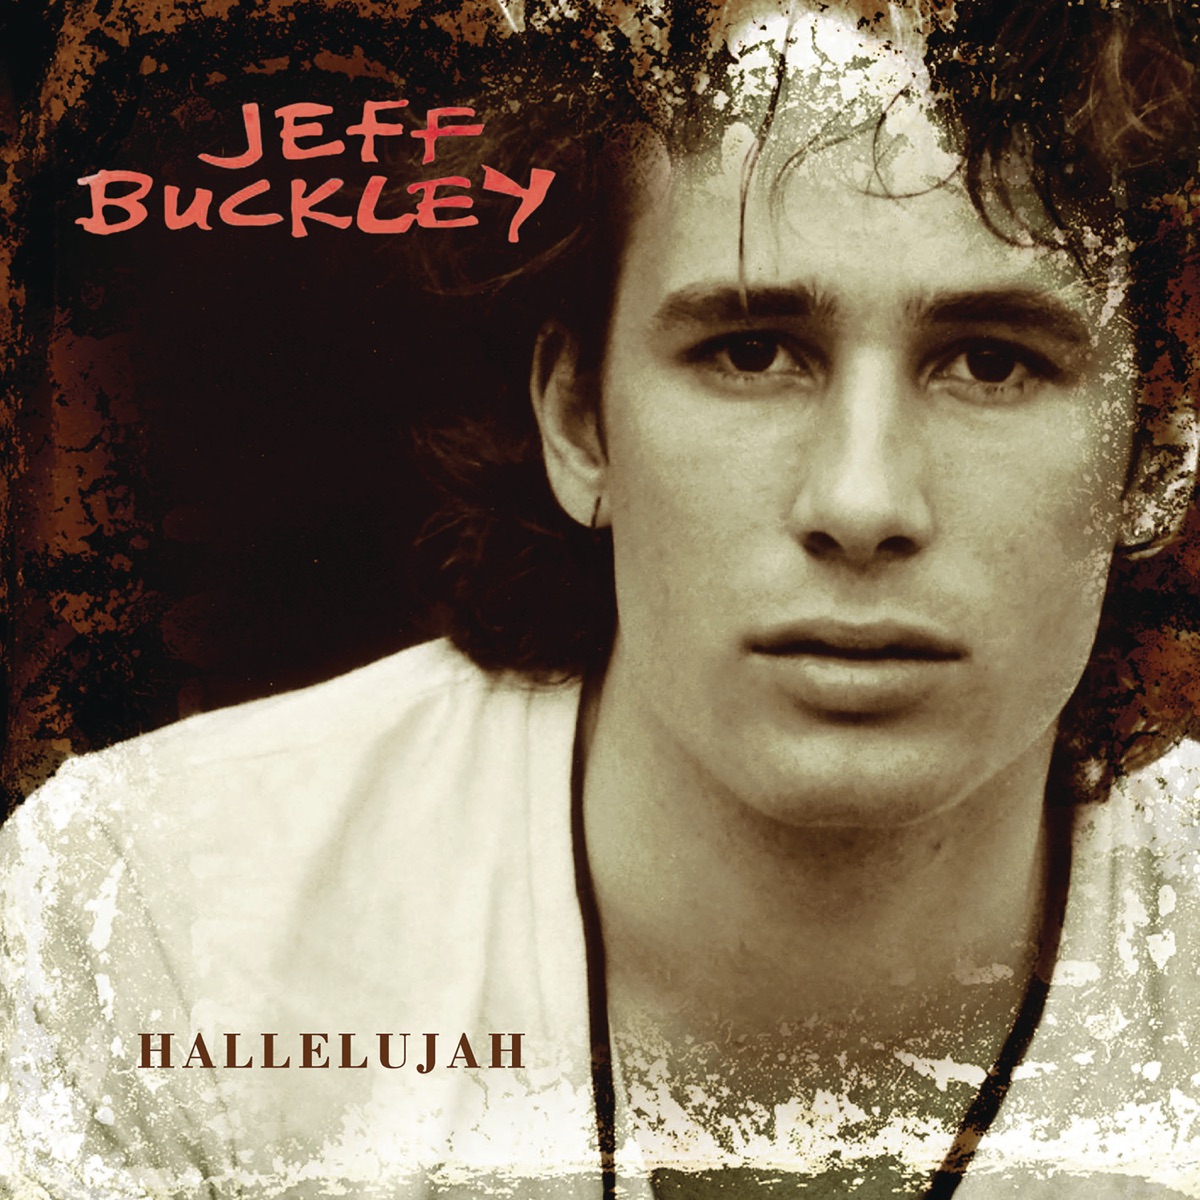 Jeff Buckley Hallelujah cover artwork